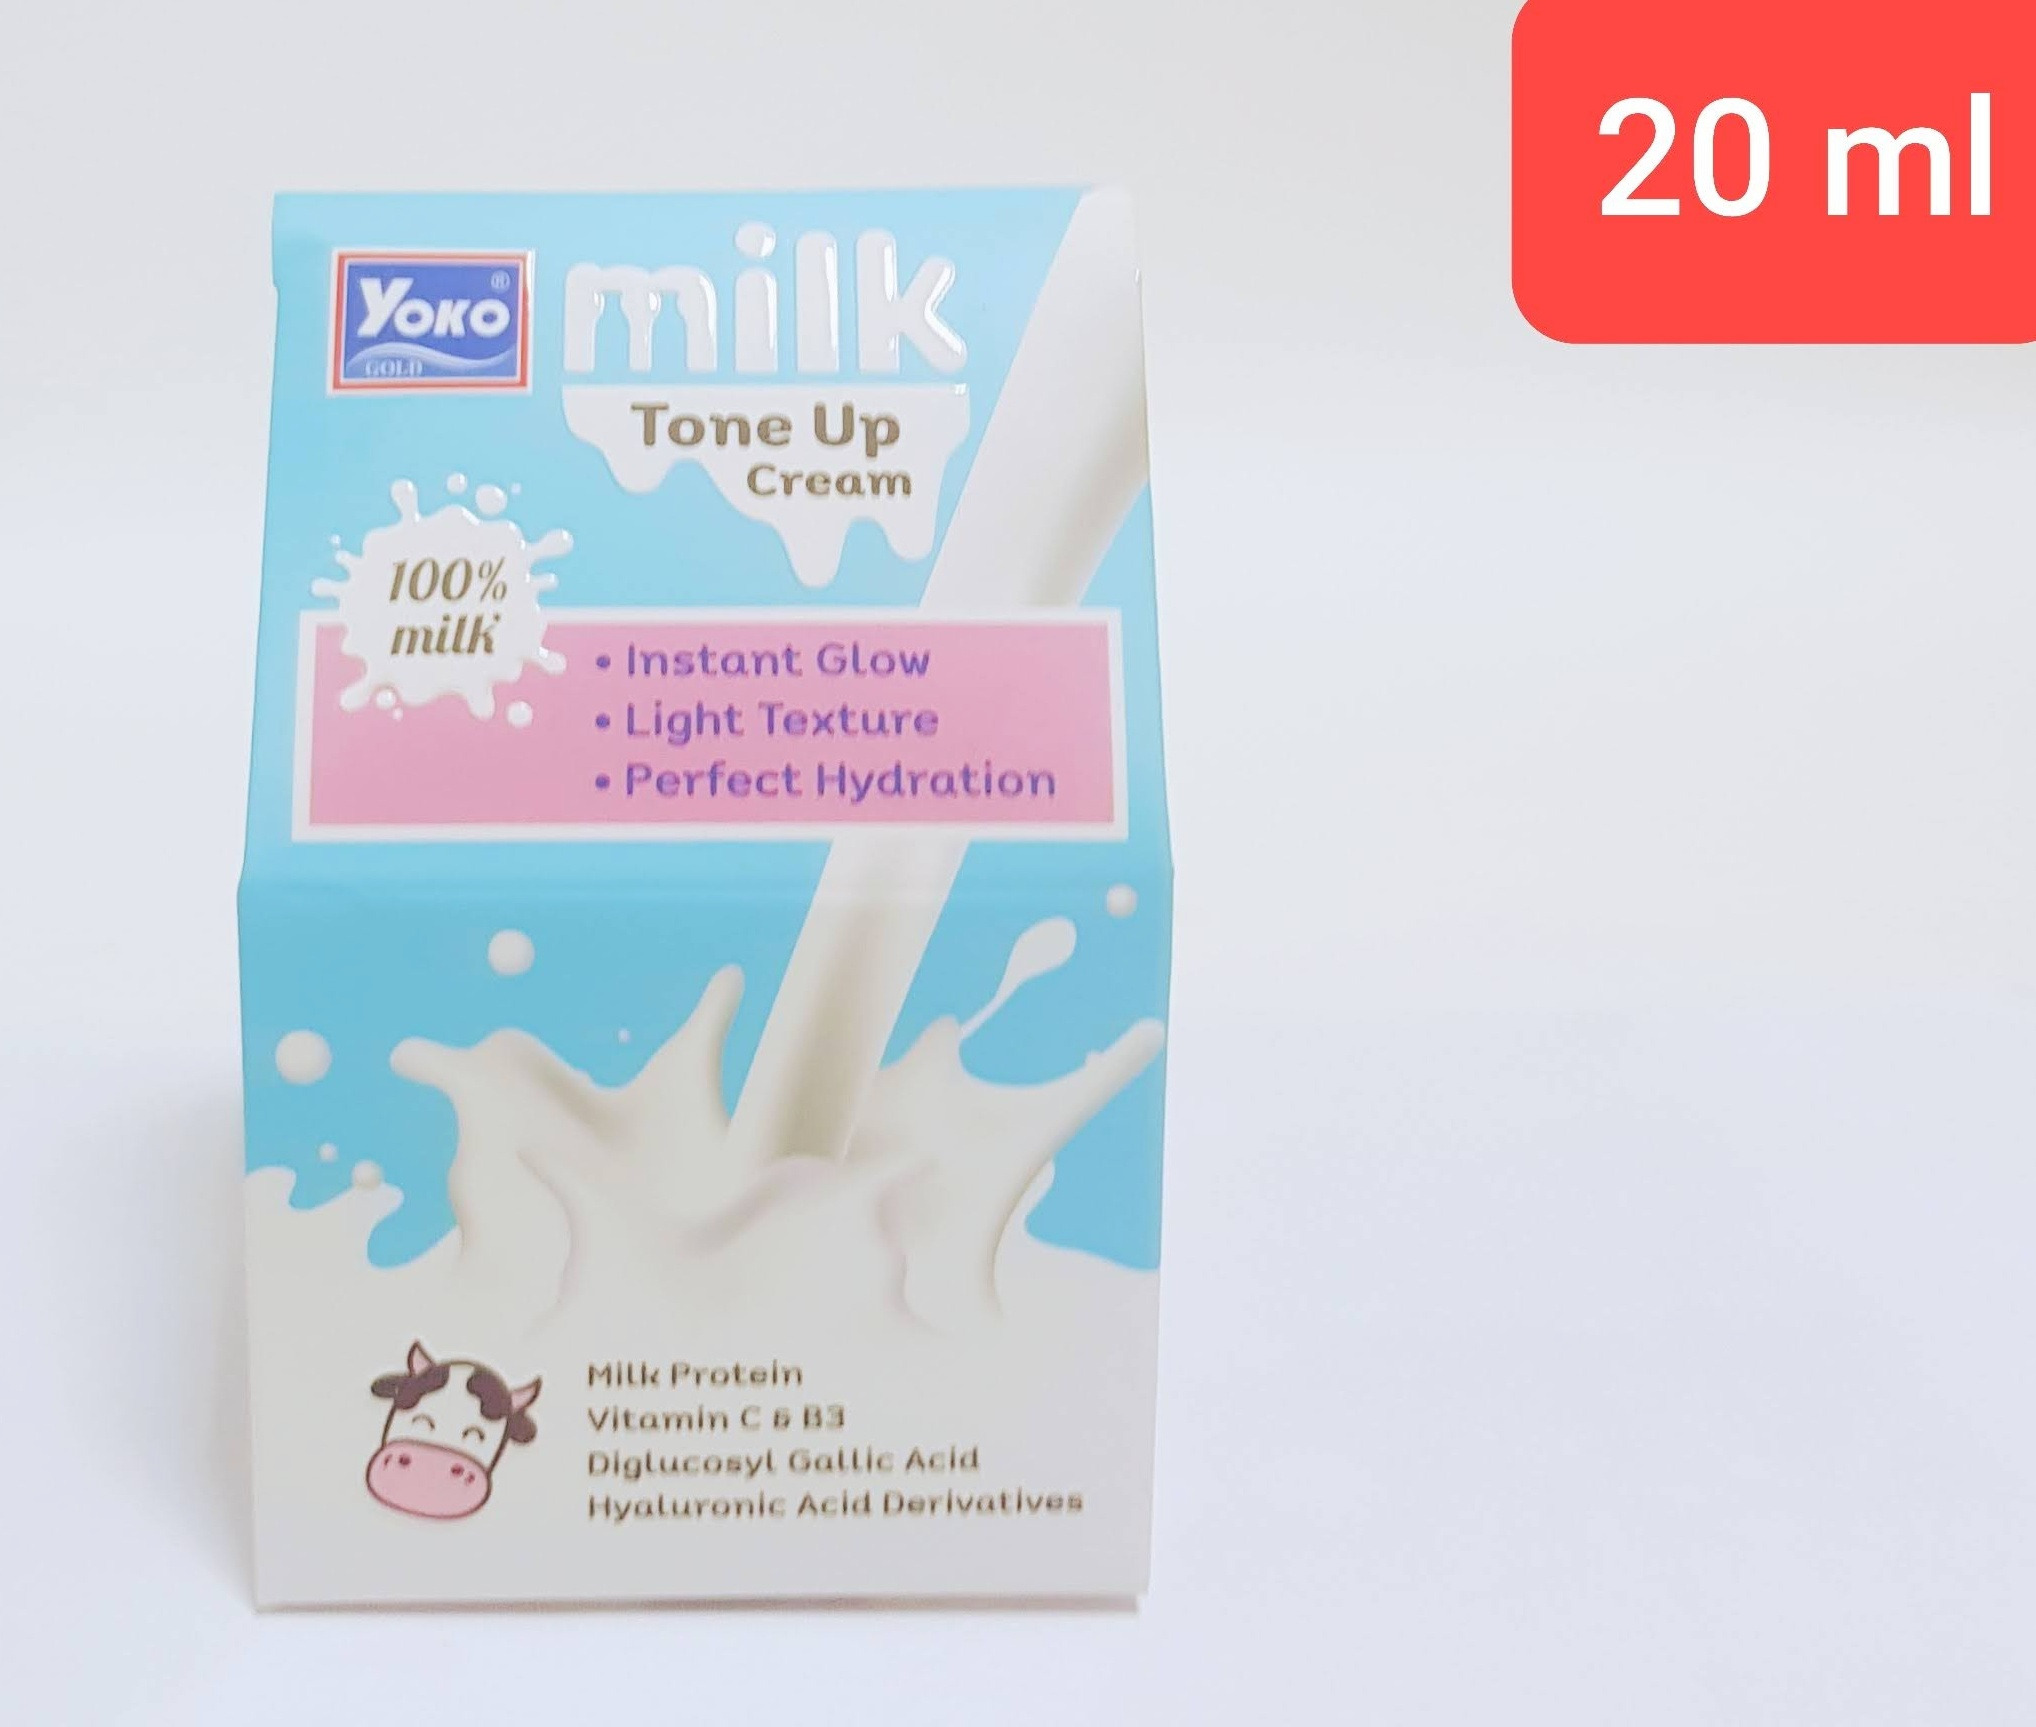 Yoko Gold Milk Tone Up Cream 20 ml (Cargo)